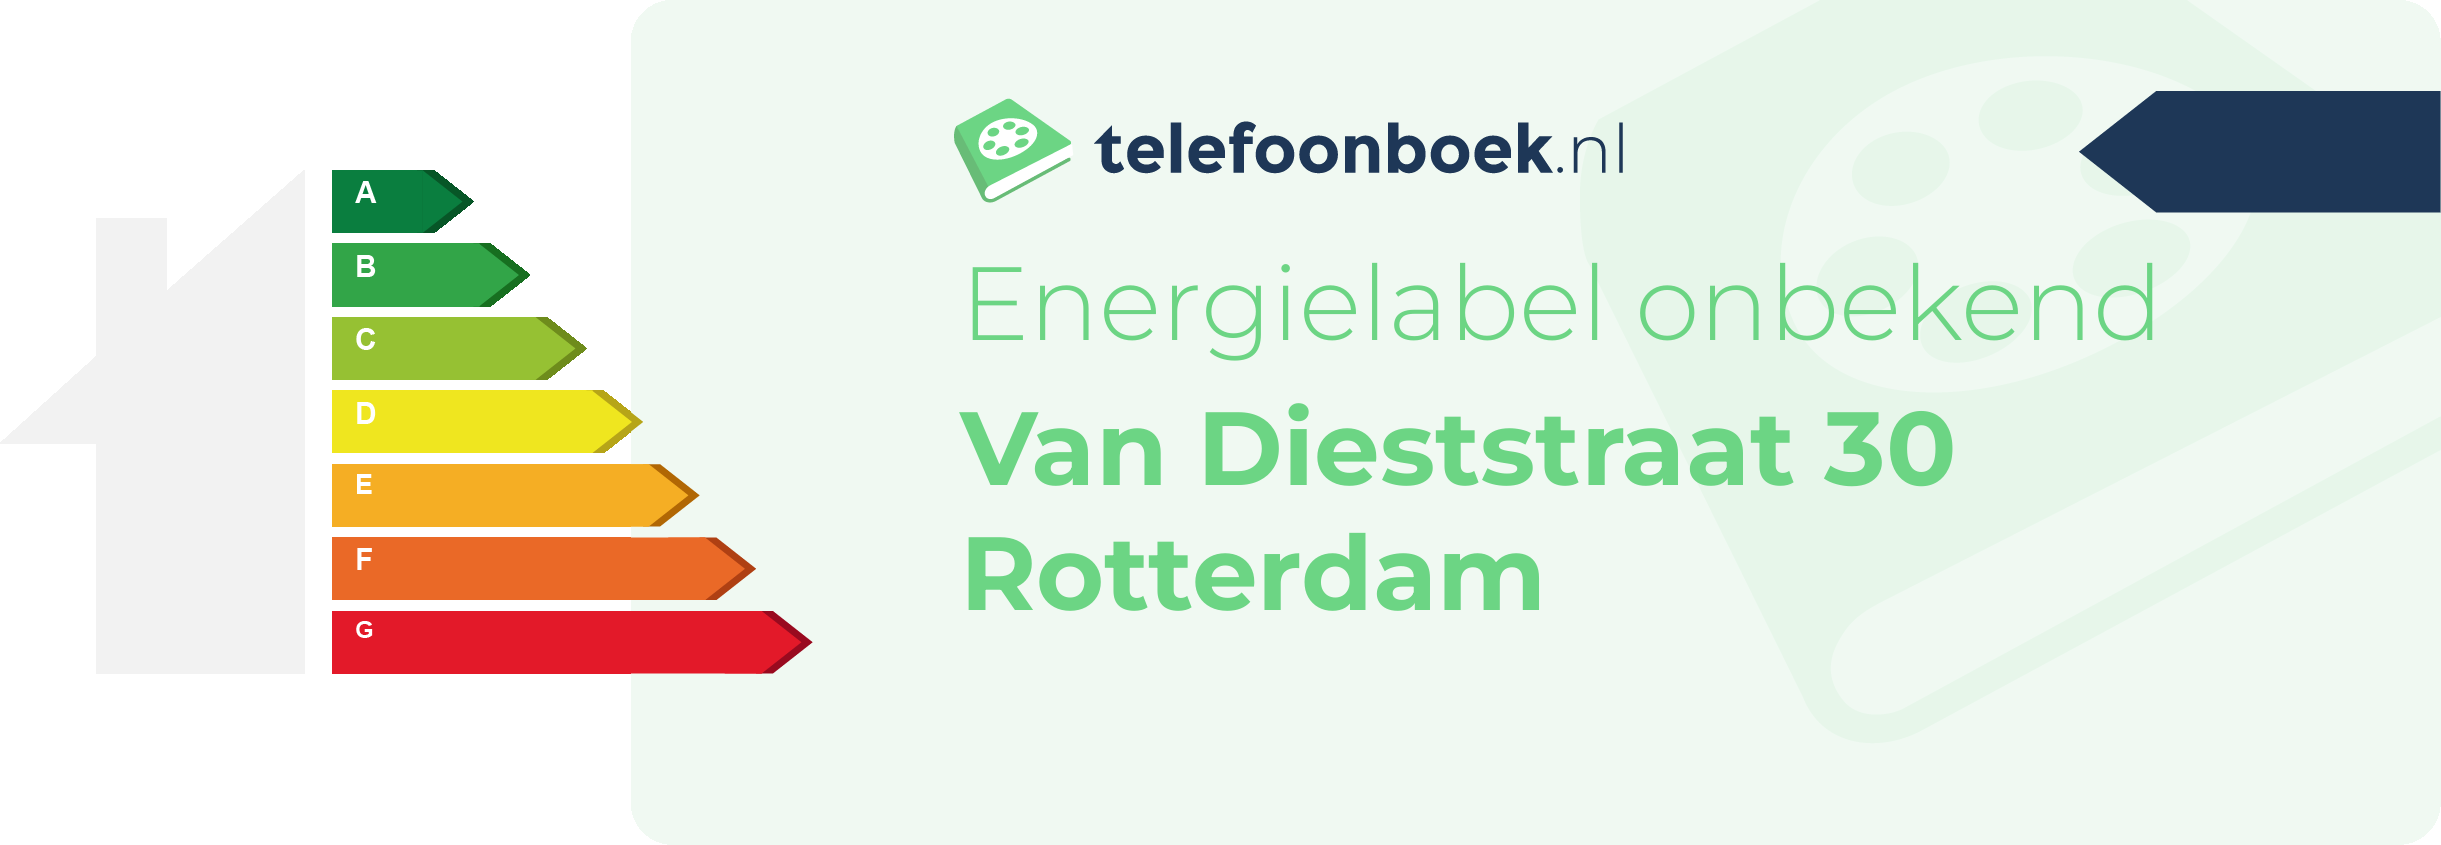 Energielabel Van Dieststraat 30 Rotterdam